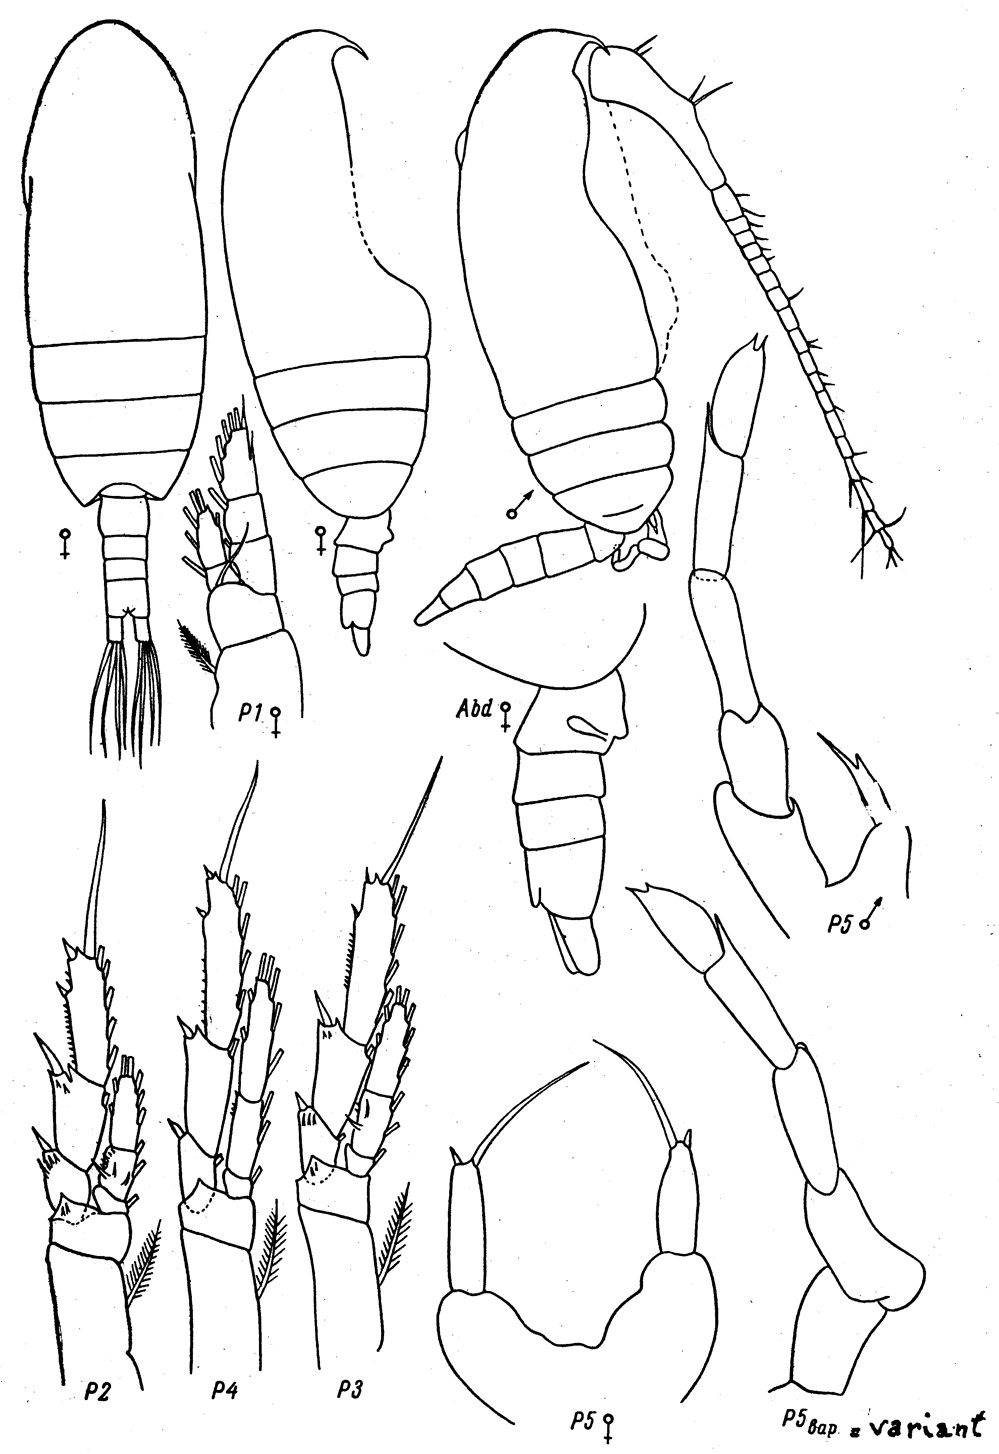 Species Paracalanus parvus - Plate 24 of morphological figures